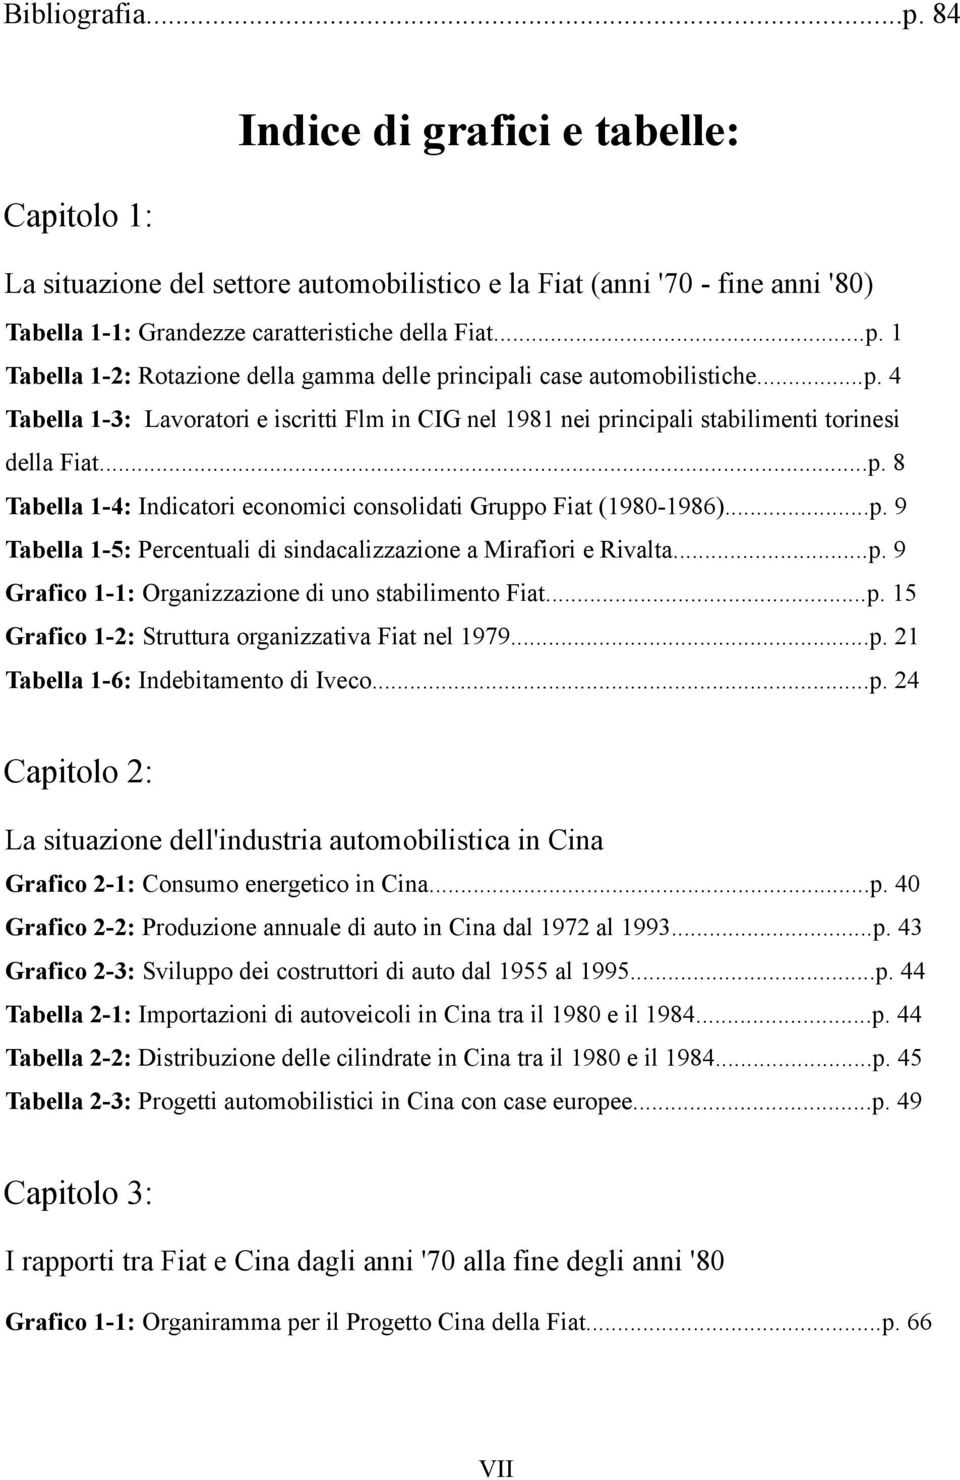 ..p. 9 Grafico 1-1: Organizzazione di uno stabilimento Fiat...p. 15 Grafico 1-2: Struttura organizzativa Fiat nel 1979...p. 21 Tabella 1-6: Indebitamento di Iveco...p. 24 Capitolo 2: La situazione dell'industria automobilistica in Cina Grafico 2-1: Consumo energetico in Cina.